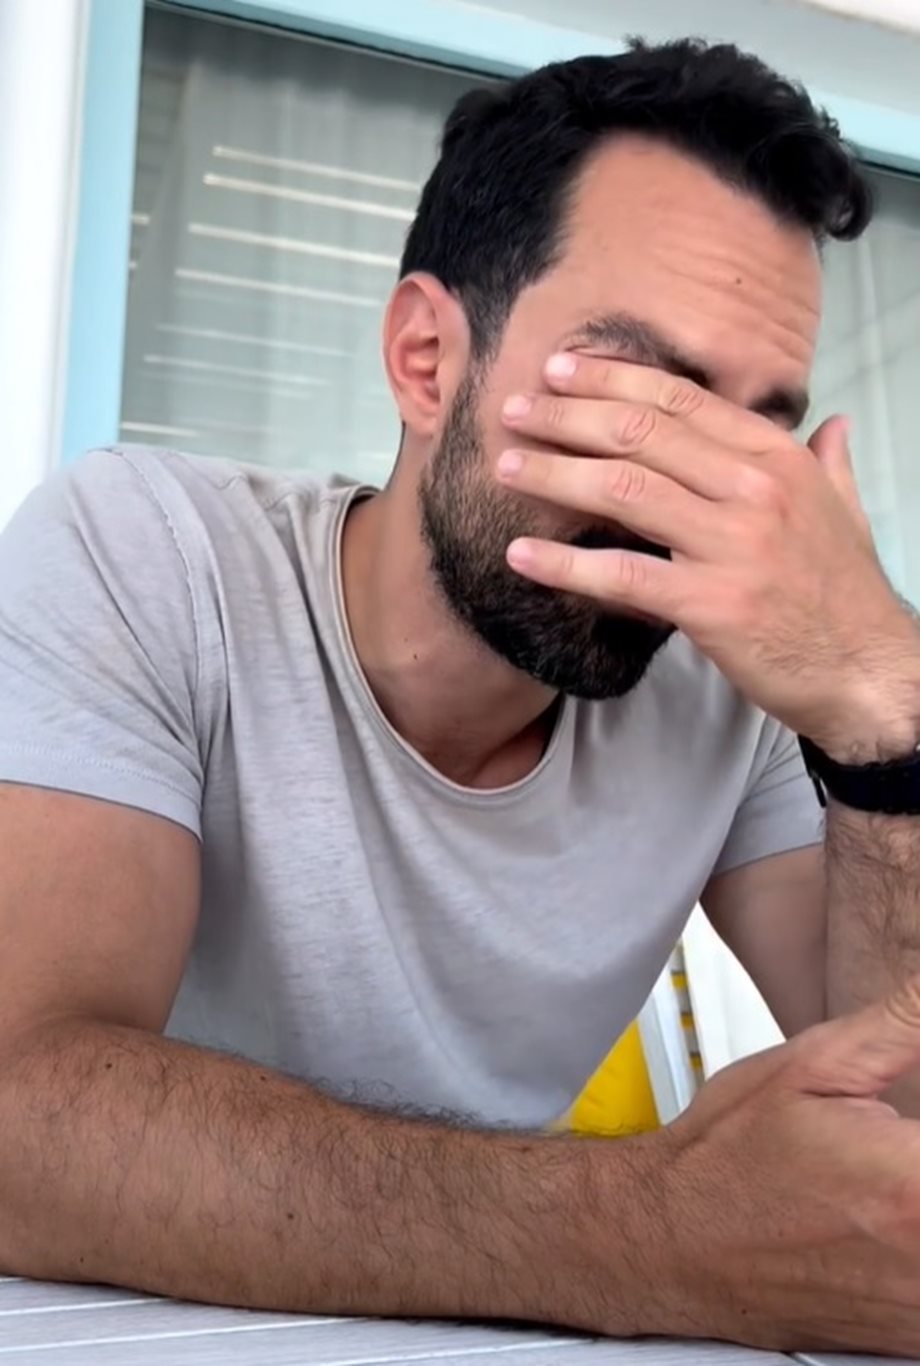 Σάκης Τανιμανίδης: Το τηλεφώνημα που έκανε στον πατέρα του και τον συγκίνησε (Βίντεο)